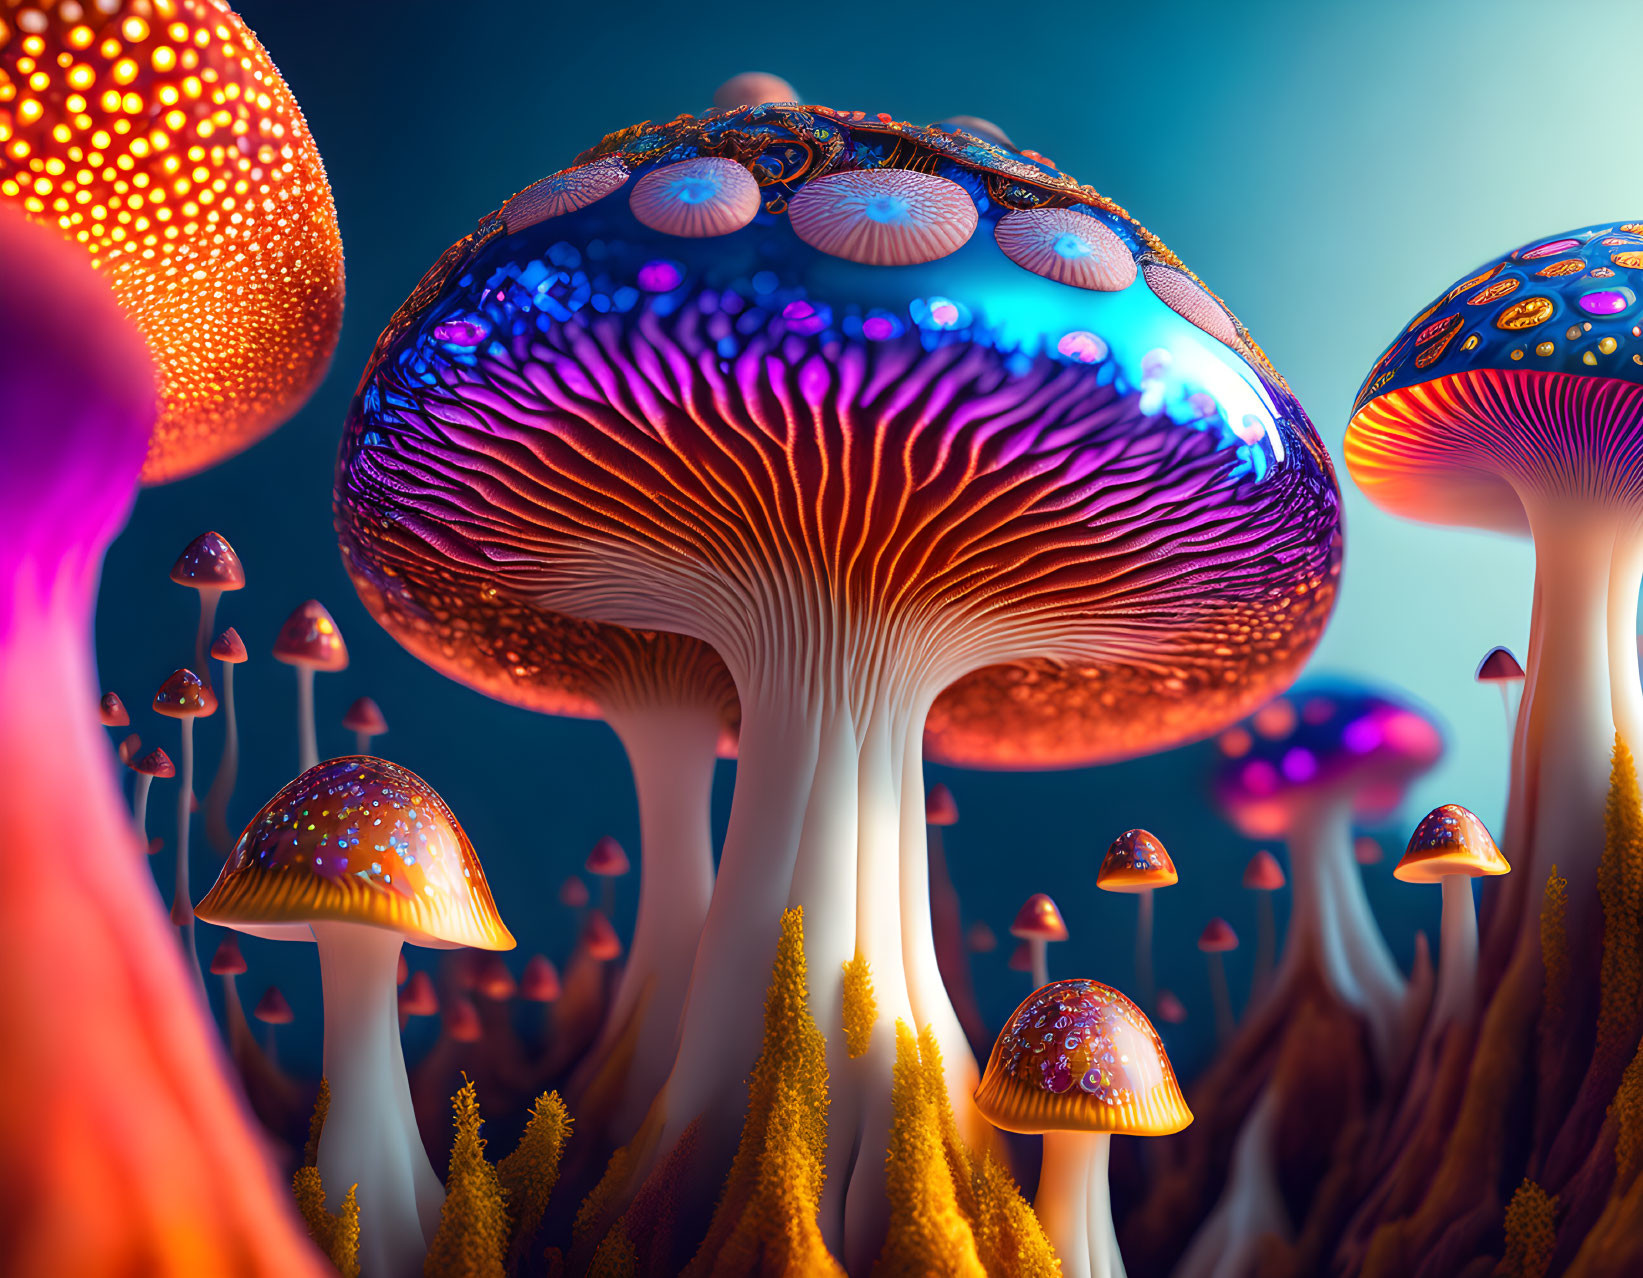 Magic Mushrooms 